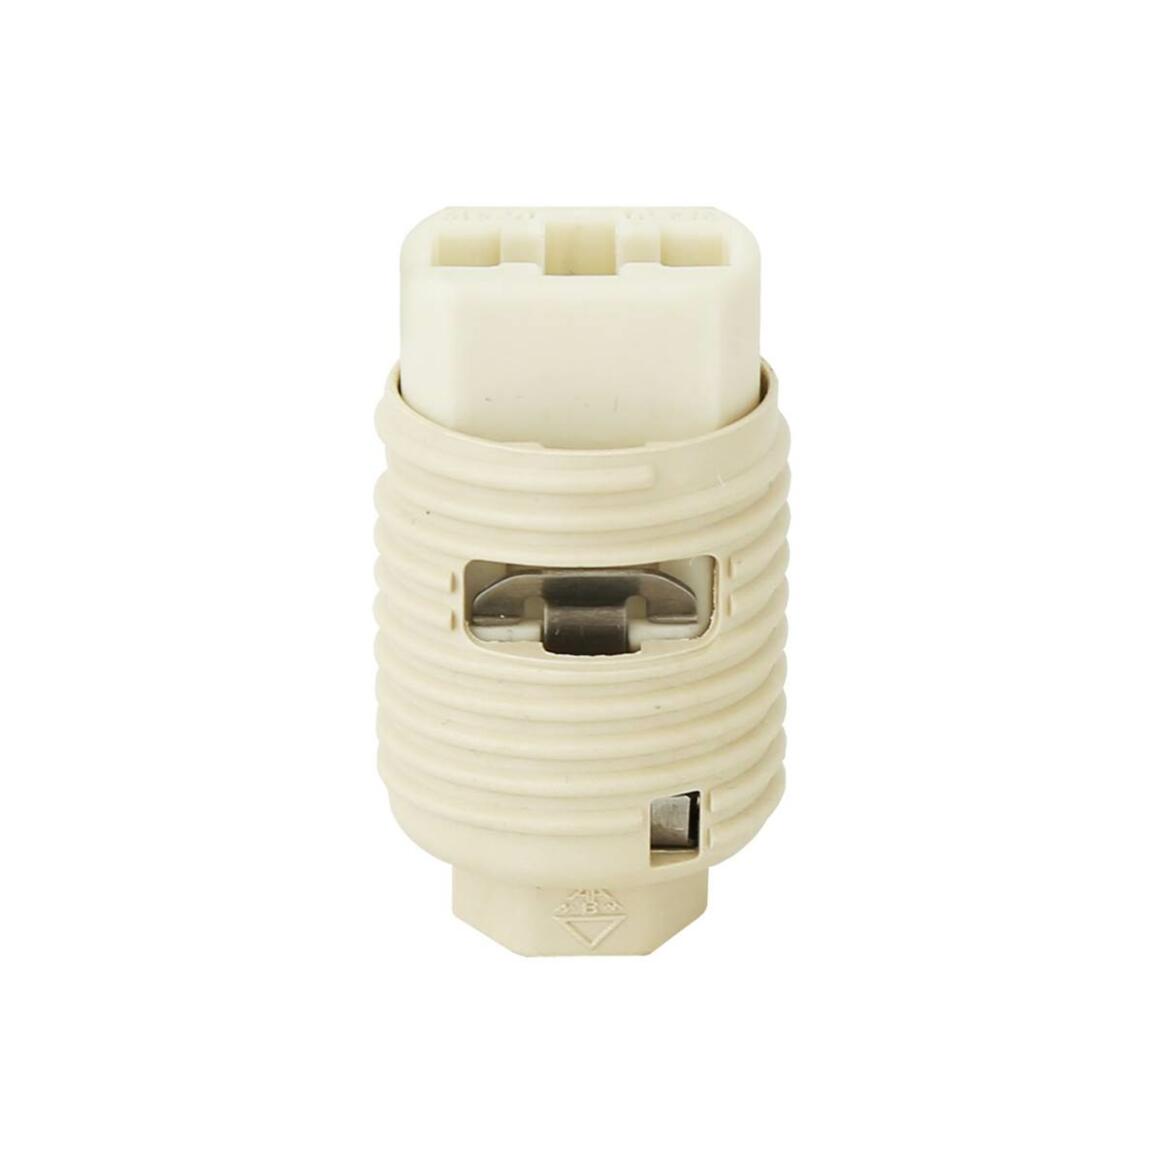 G9 Base Ceramic Lamp Holder Socket M10 main product image